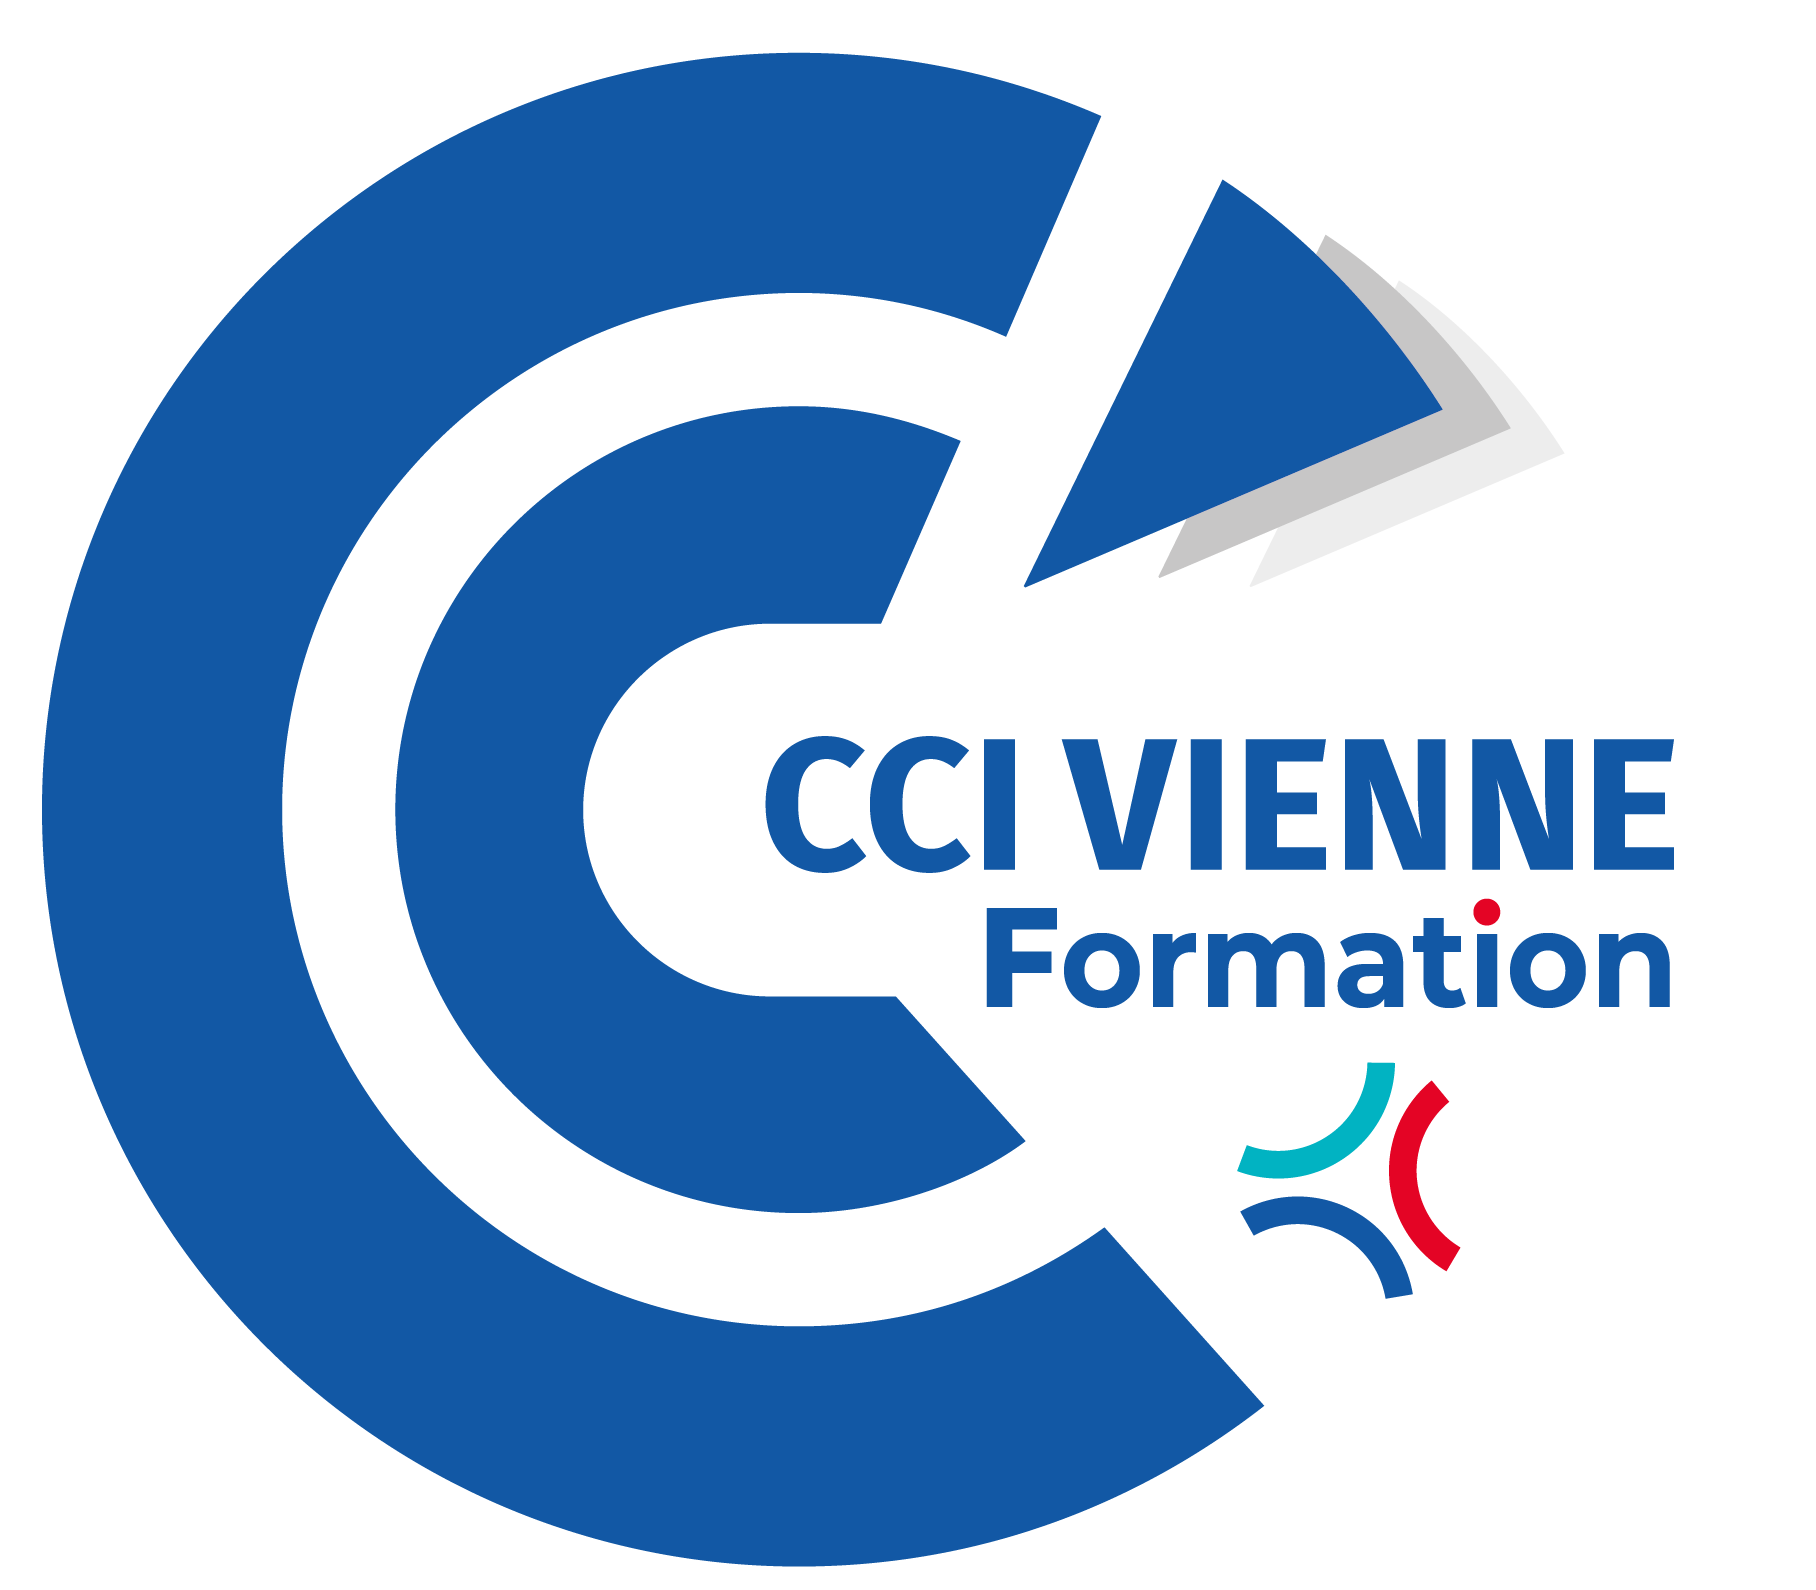 CCI Vienne